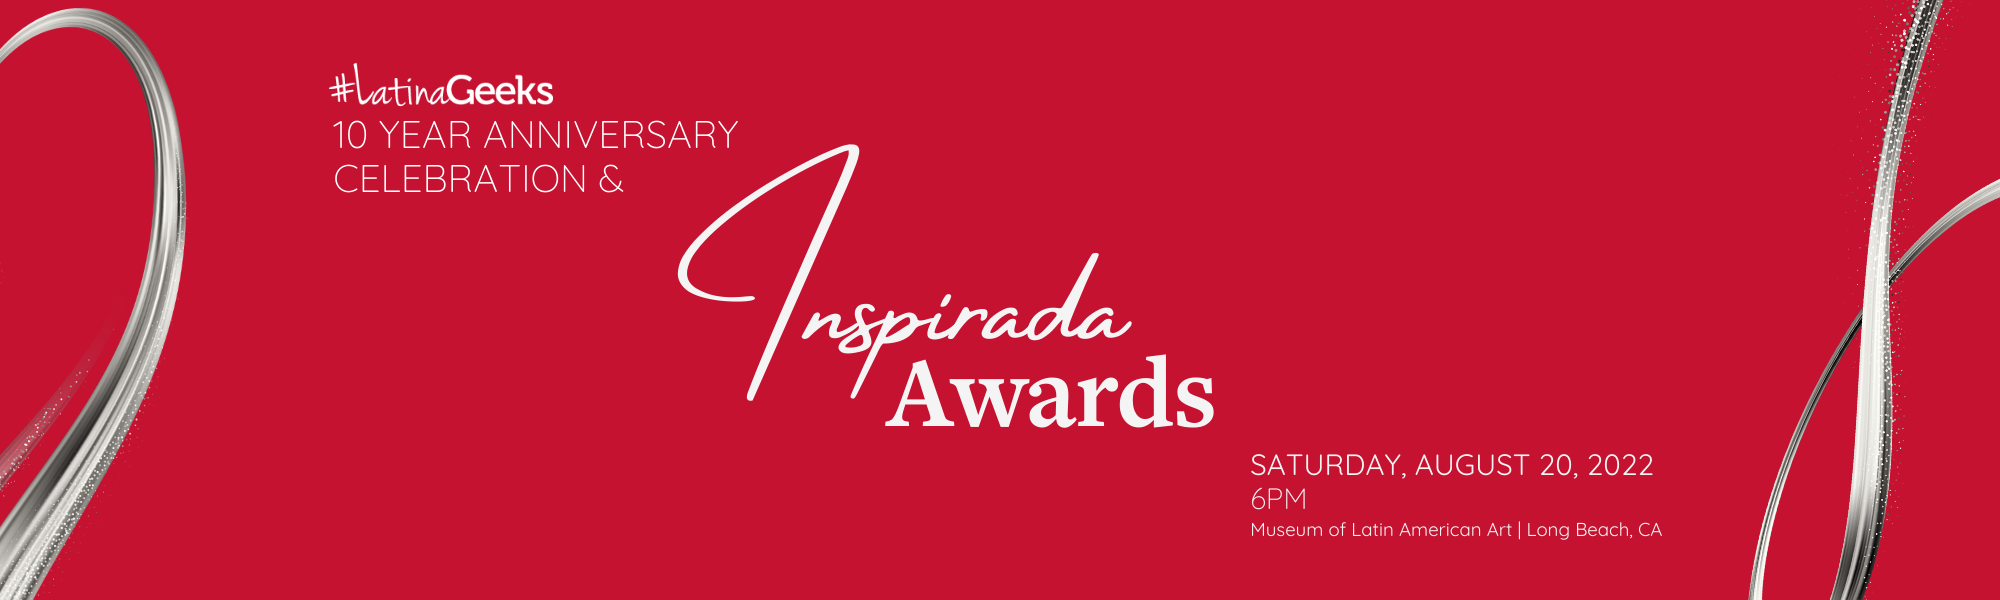 Red Inspirada Awards Gala Event Graphic